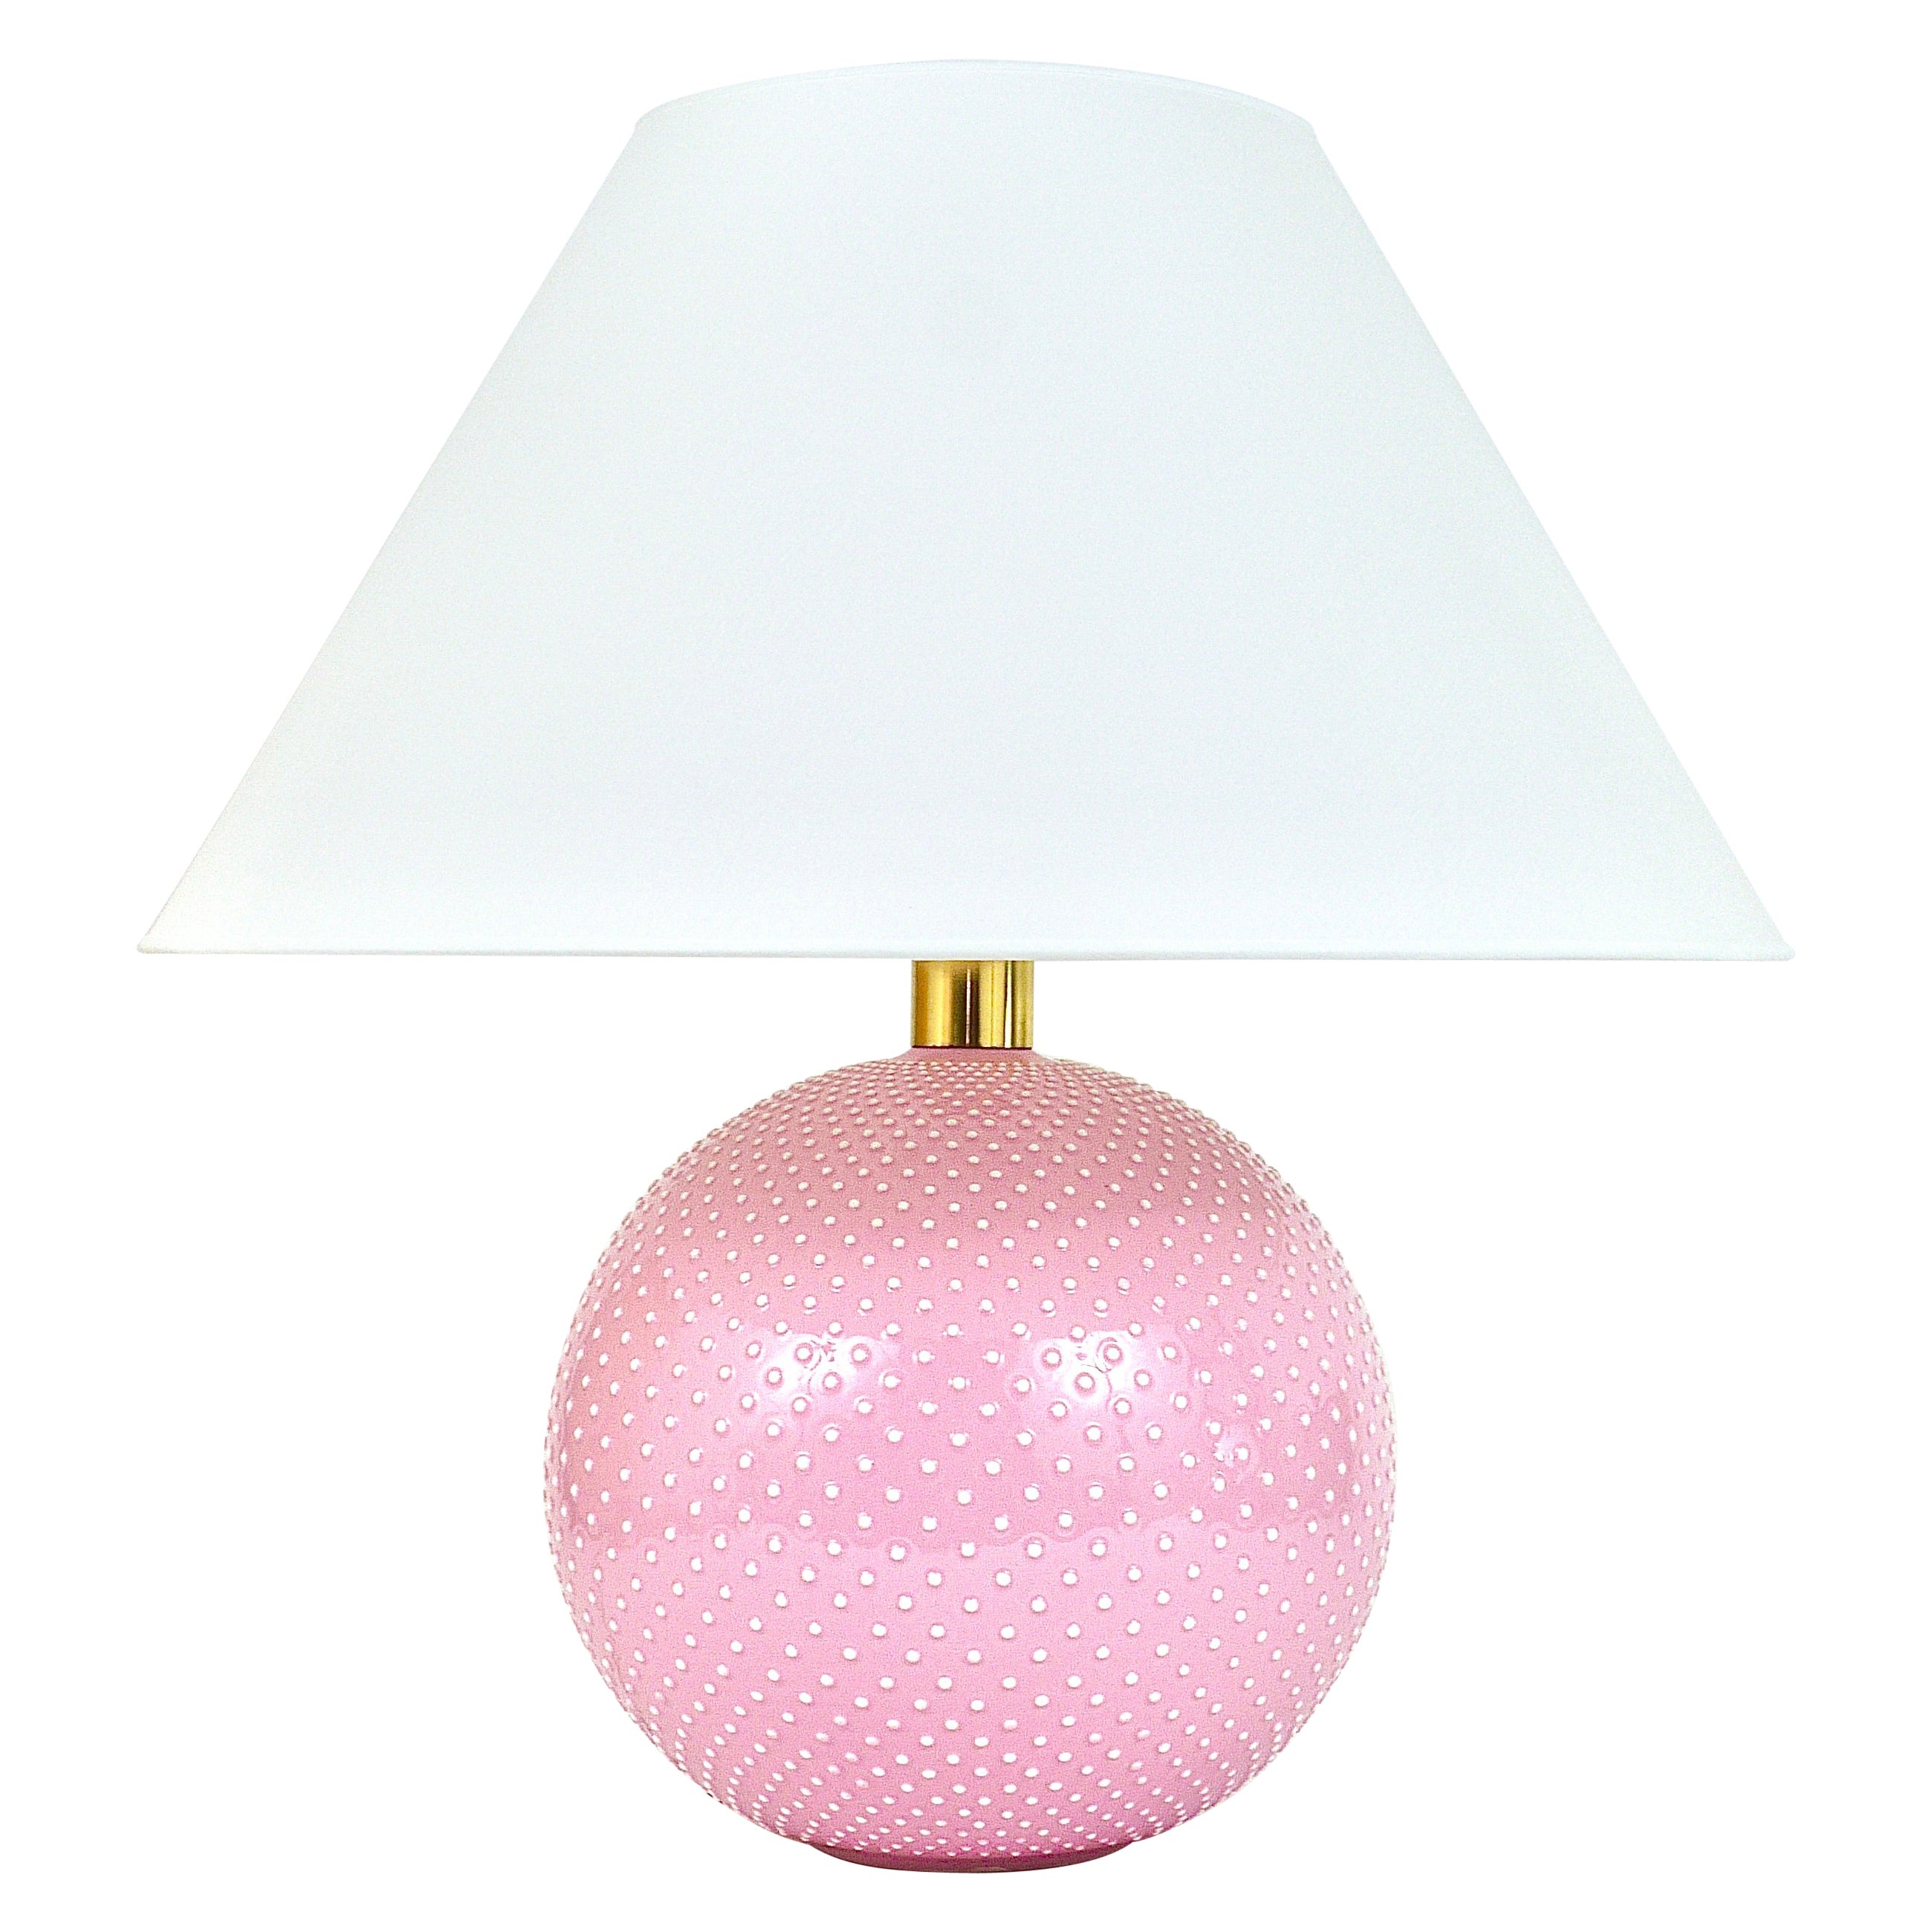 Rosé Pastel Polka Dot Sphere Table Lamp, Ceramic, Brass, Studio Paf Milano, 1970 For Sale